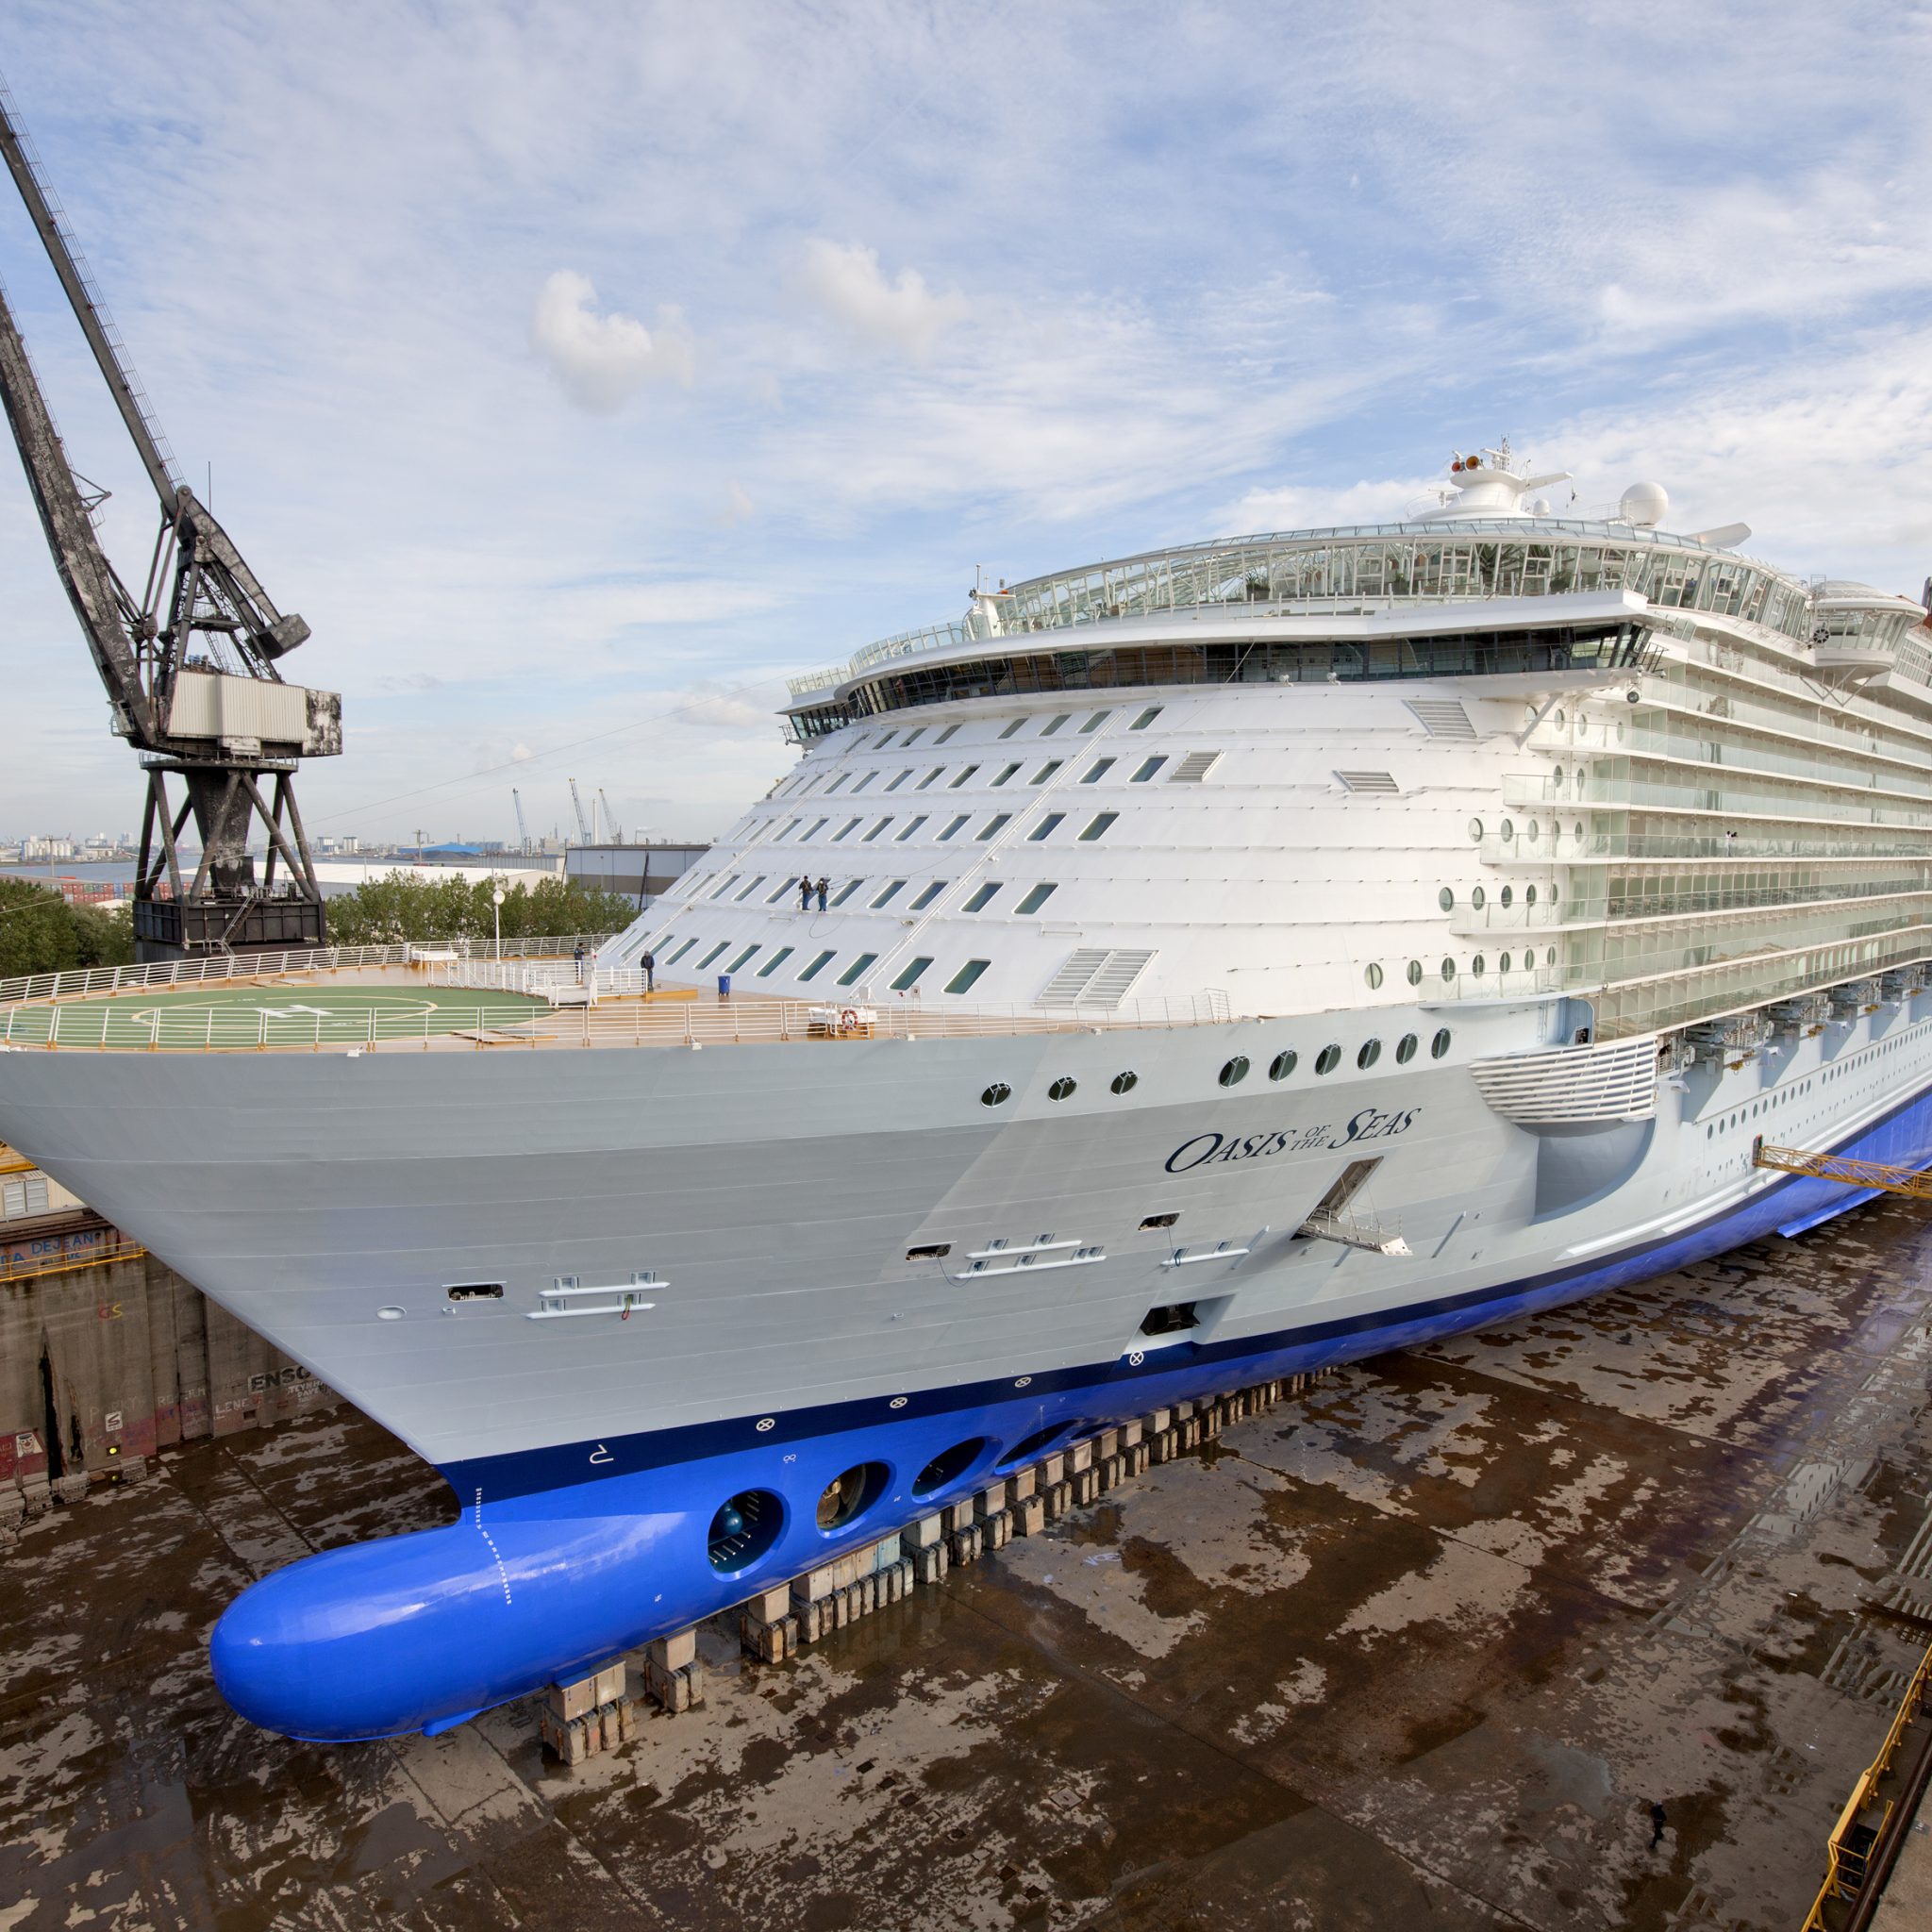 De onderhoudsbeurt van de Oasis of the Seas leverde Keppel Verolme Rotterdam in 2014 een boete op van 600.000 euro. (Archieffoto Keppel Verolme)